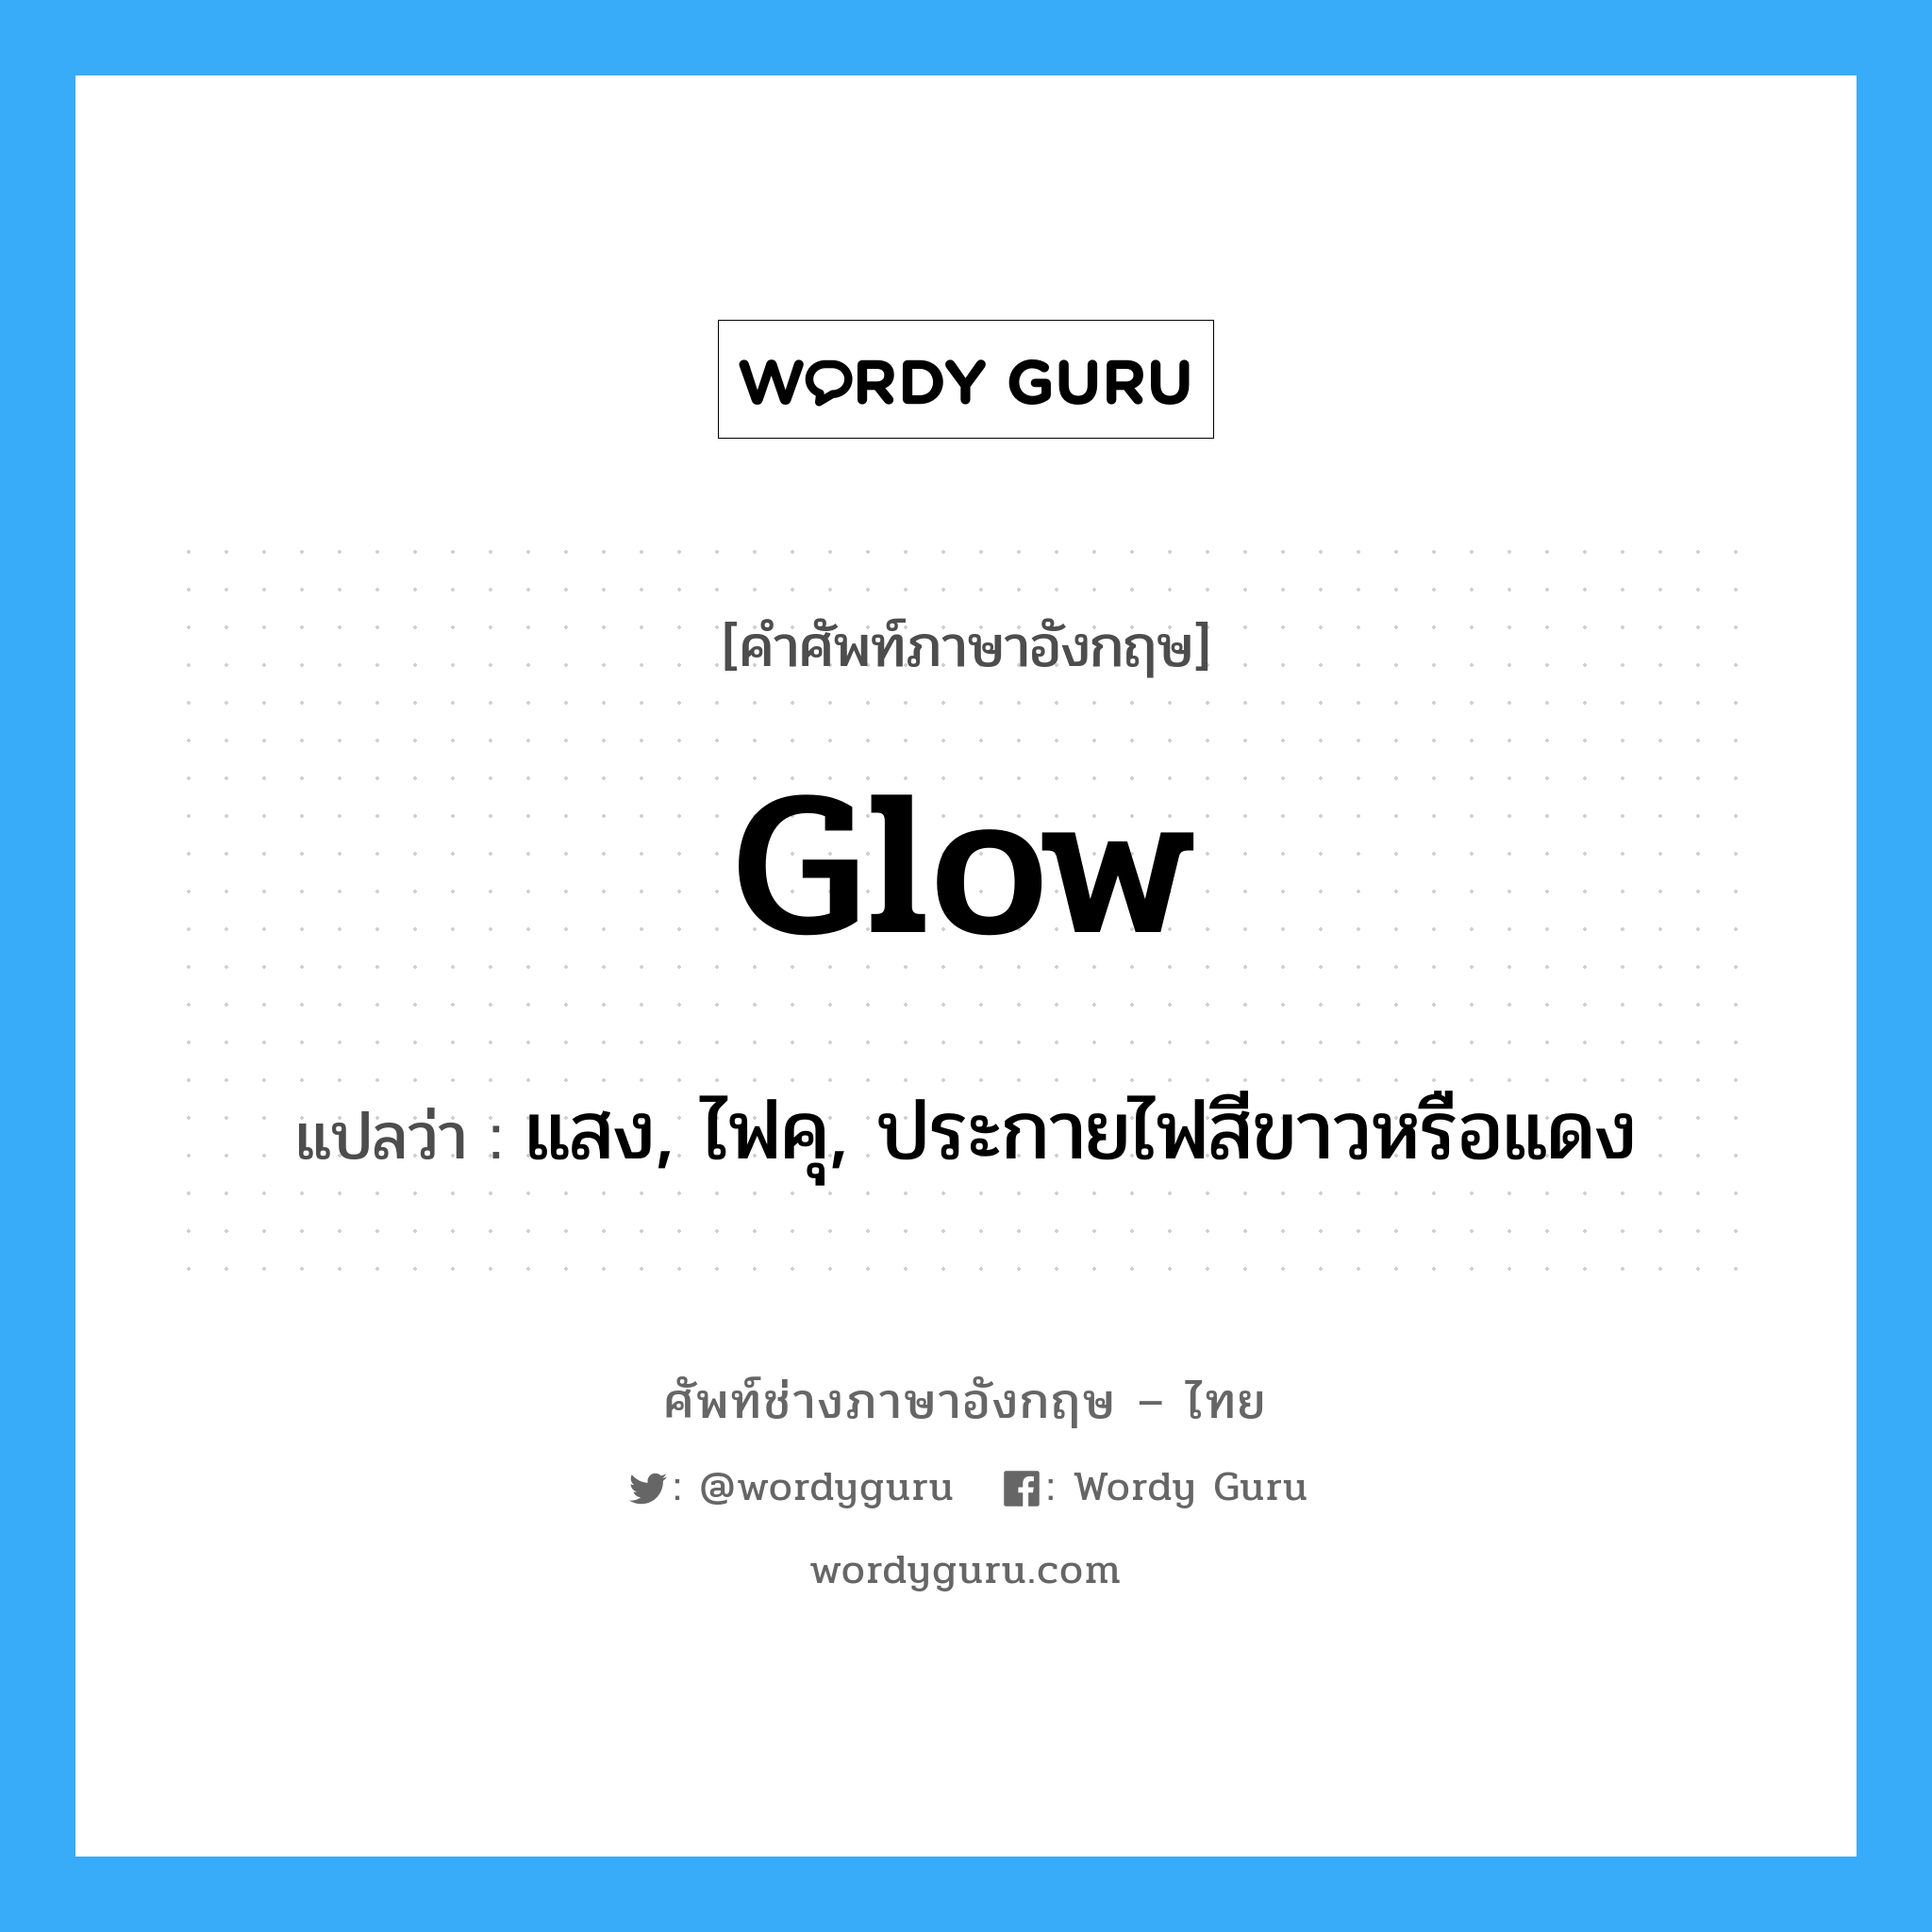 glow แปลว่า?, คำศัพท์ช่างภาษาอังกฤษ - ไทย glow คำศัพท์ภาษาอังกฤษ glow แปลว่า แสง, ไฟคุ, ประกายไฟสีขาวหรือแดง